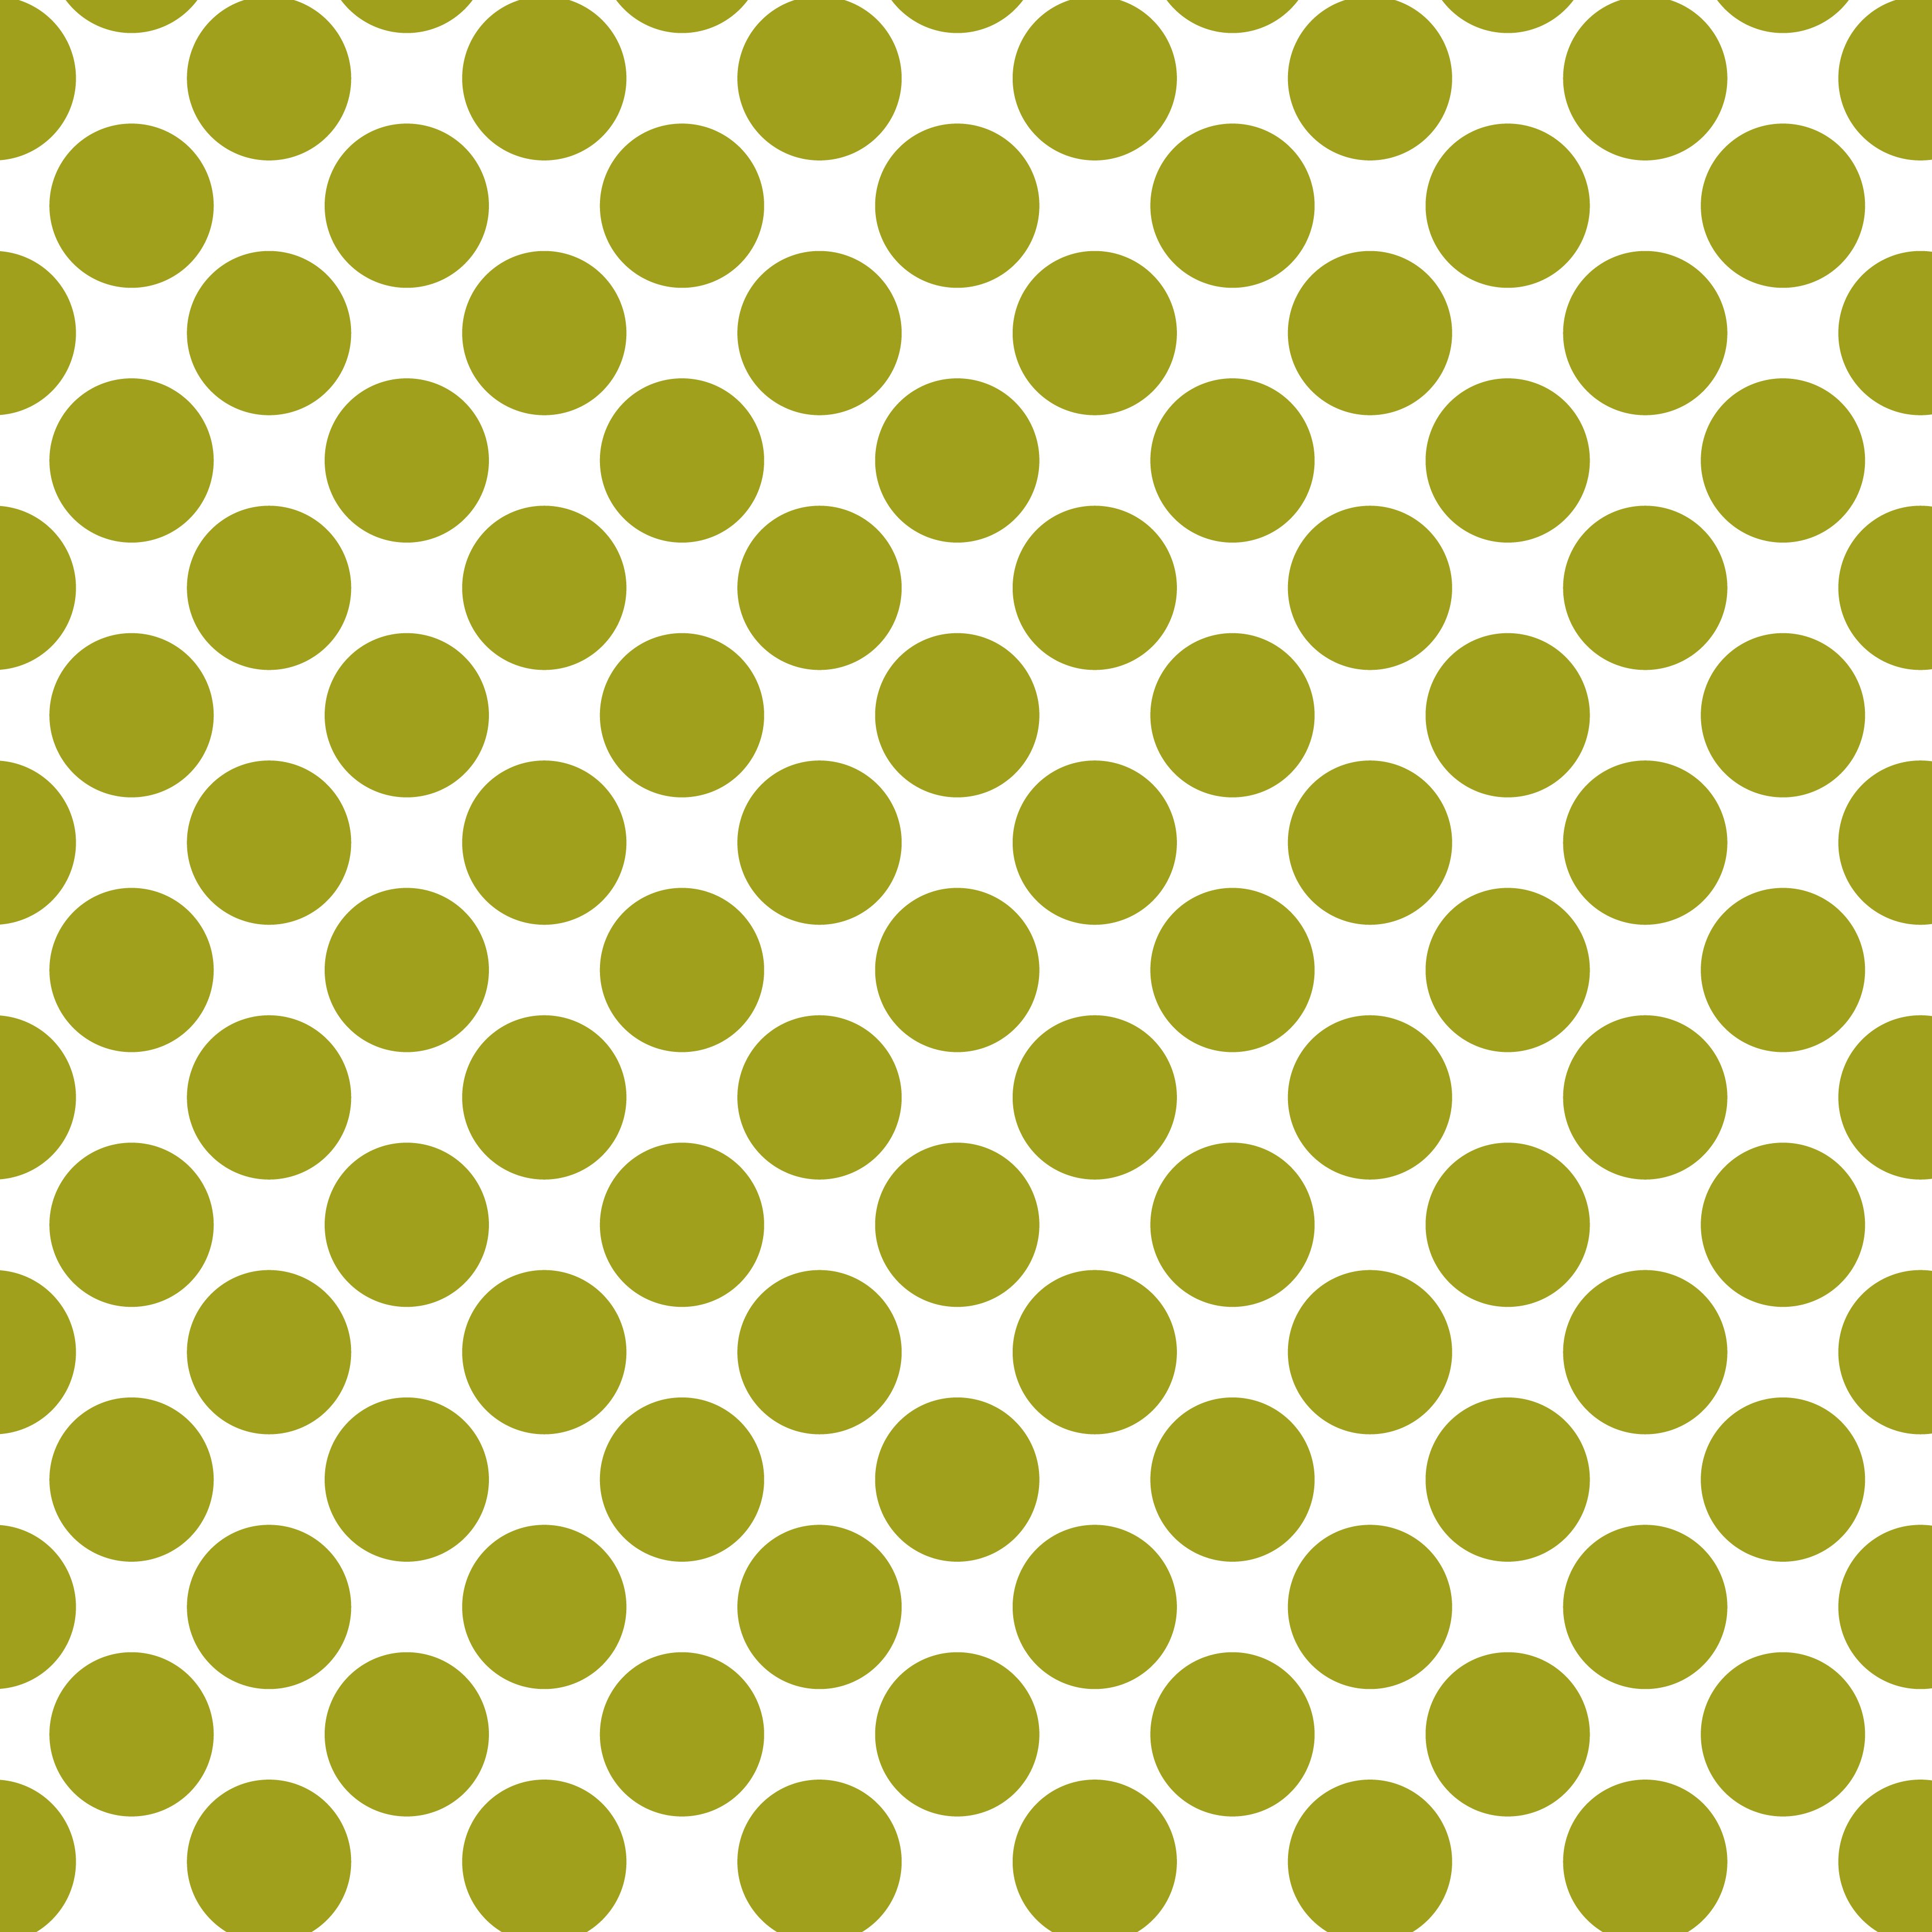 Polka Dot 1 cm Beyaz - Yağ Yeşili Puantiye Dekoratif Baskı Kumaş